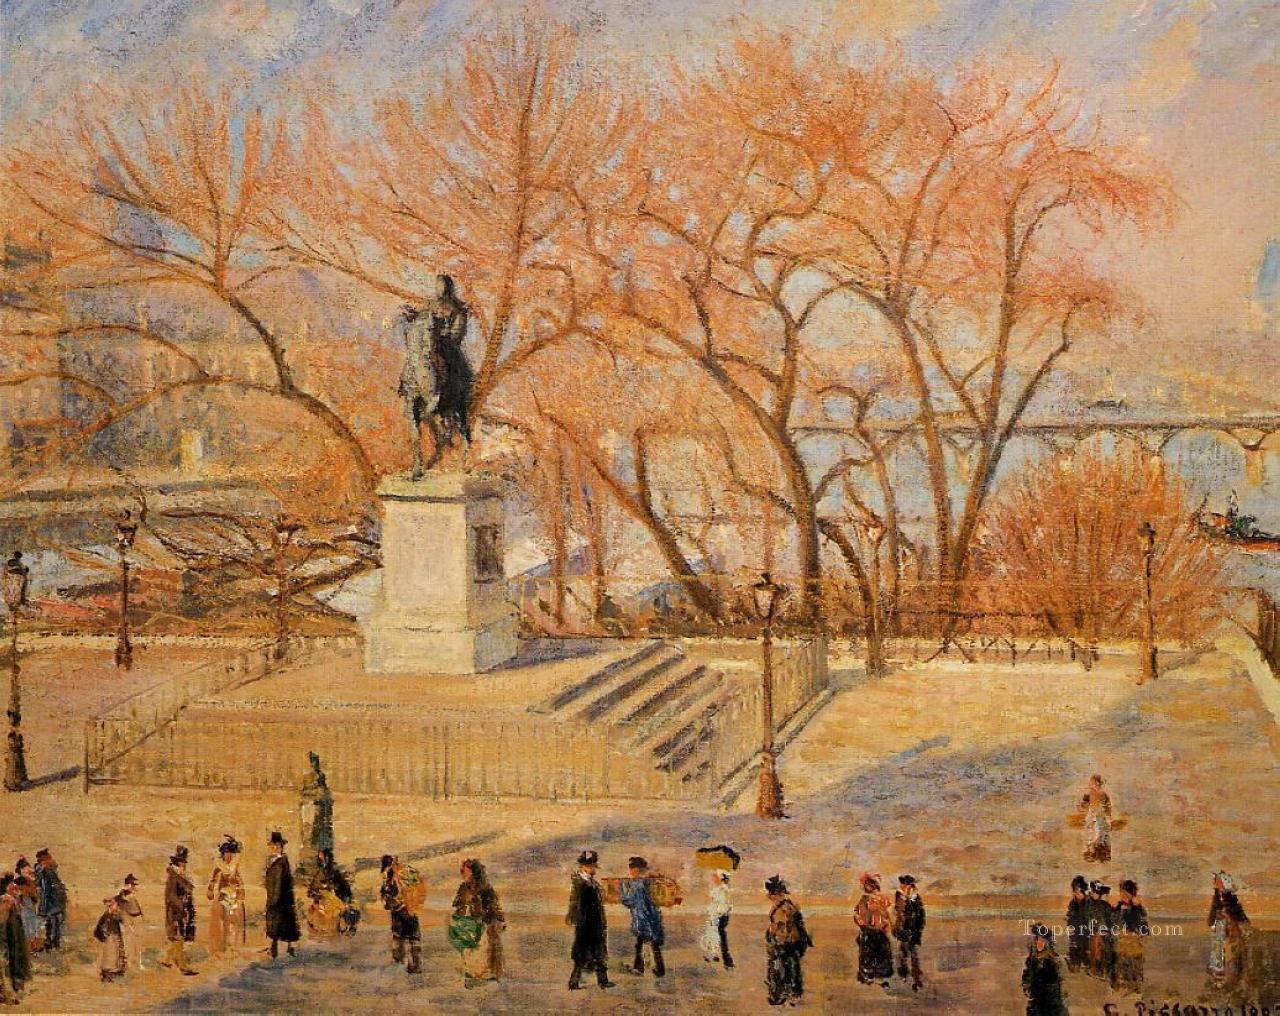 ガラント広場 晴れた朝 1902年 カミーユ・ピサロ油絵